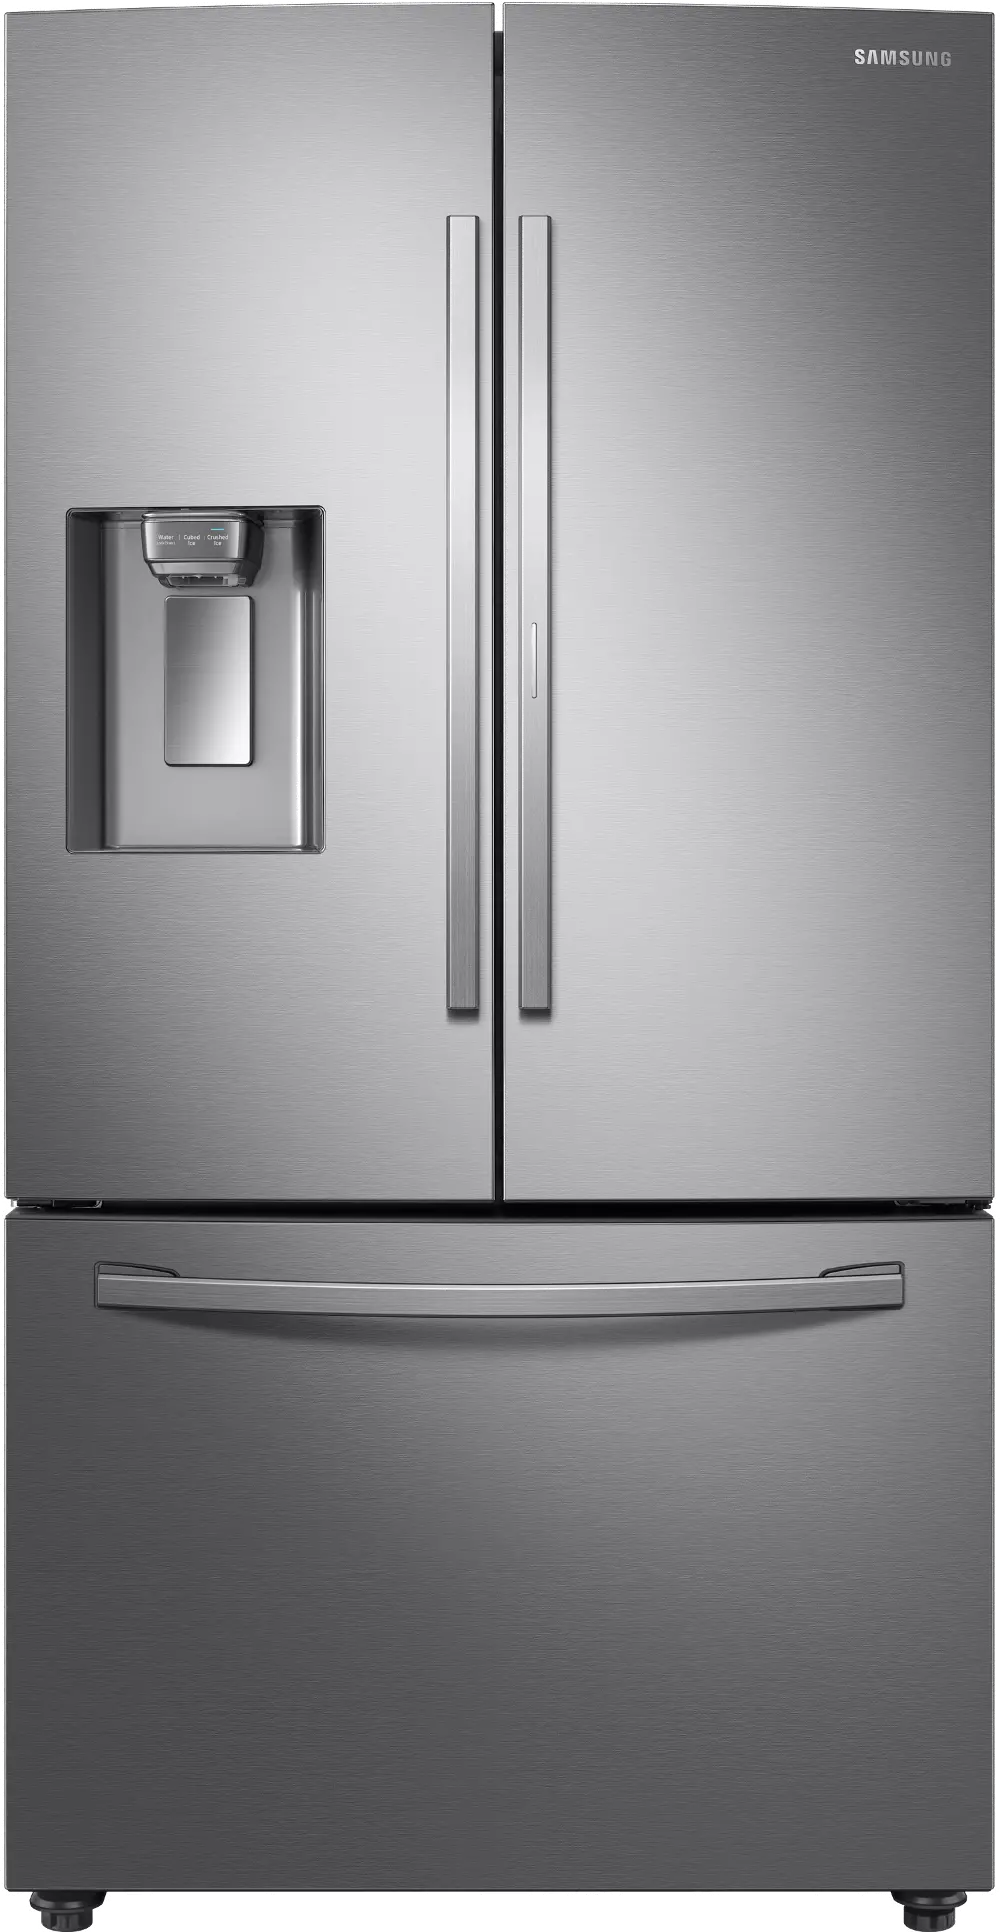 RF23R6301SR Samsung 22.5 cu ft French Door in Door Refrigerator - Counter Depth Stainless Steel-1